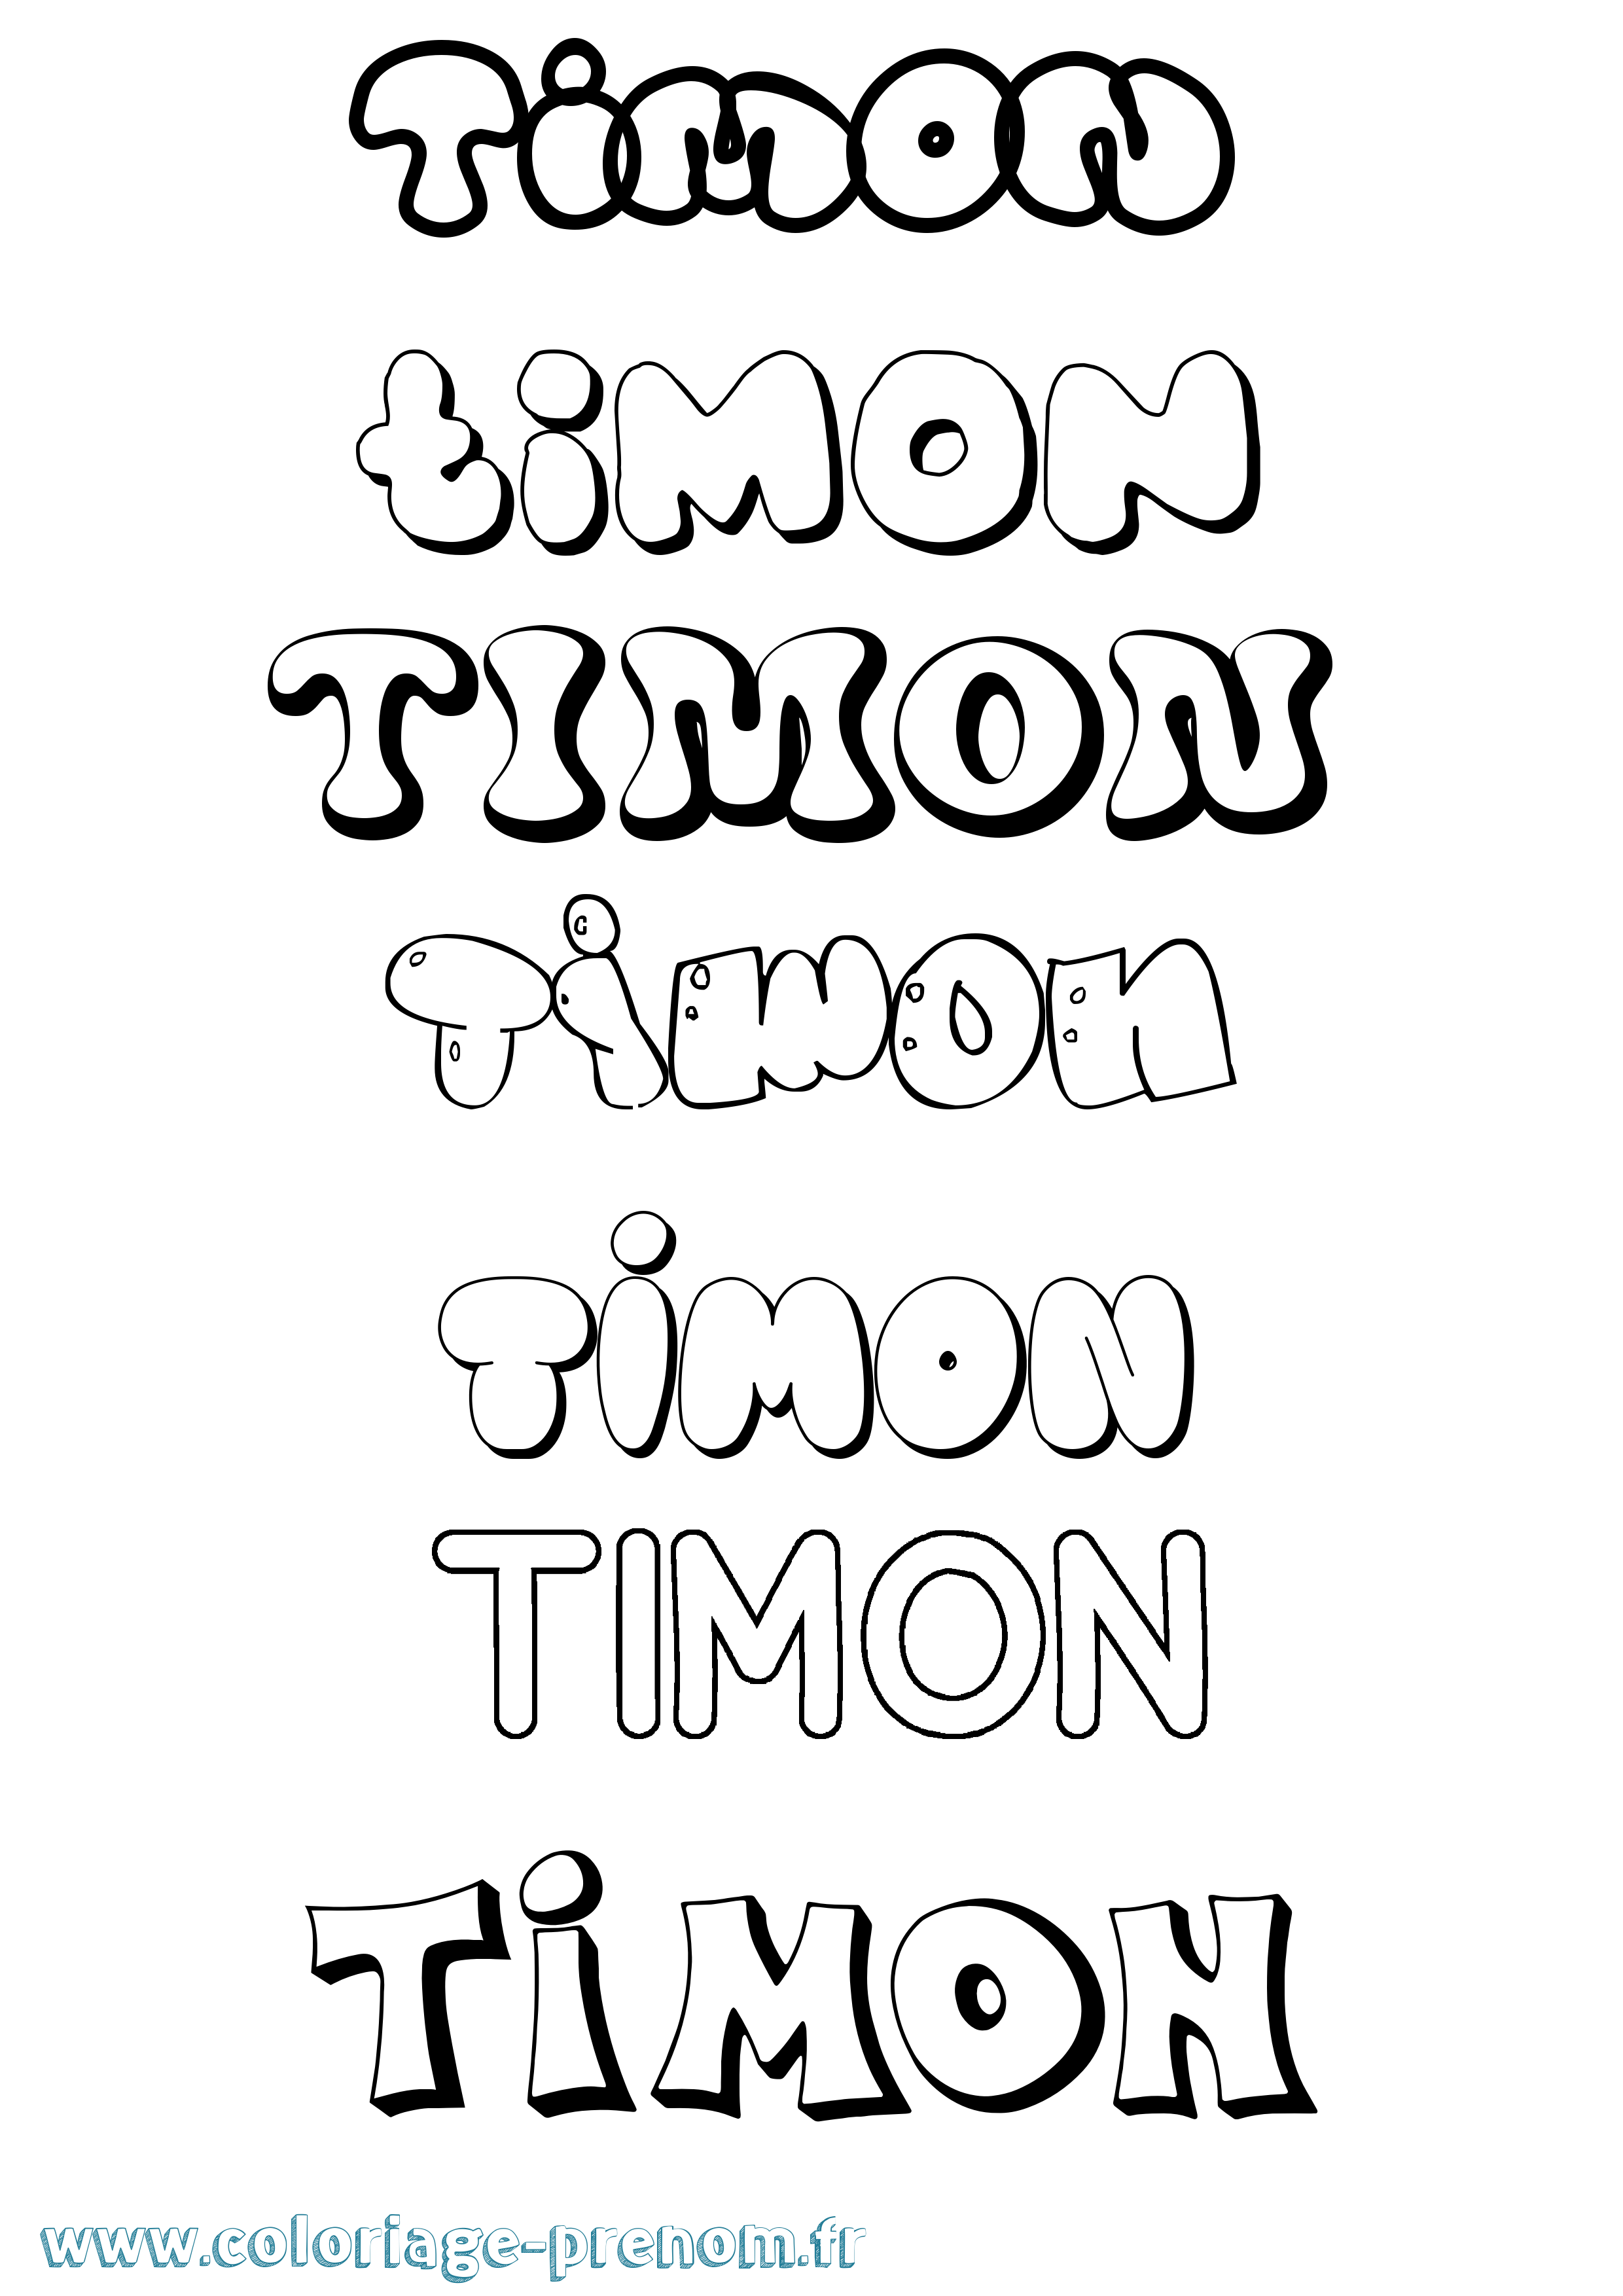 Coloriage prénom Timon Bubble